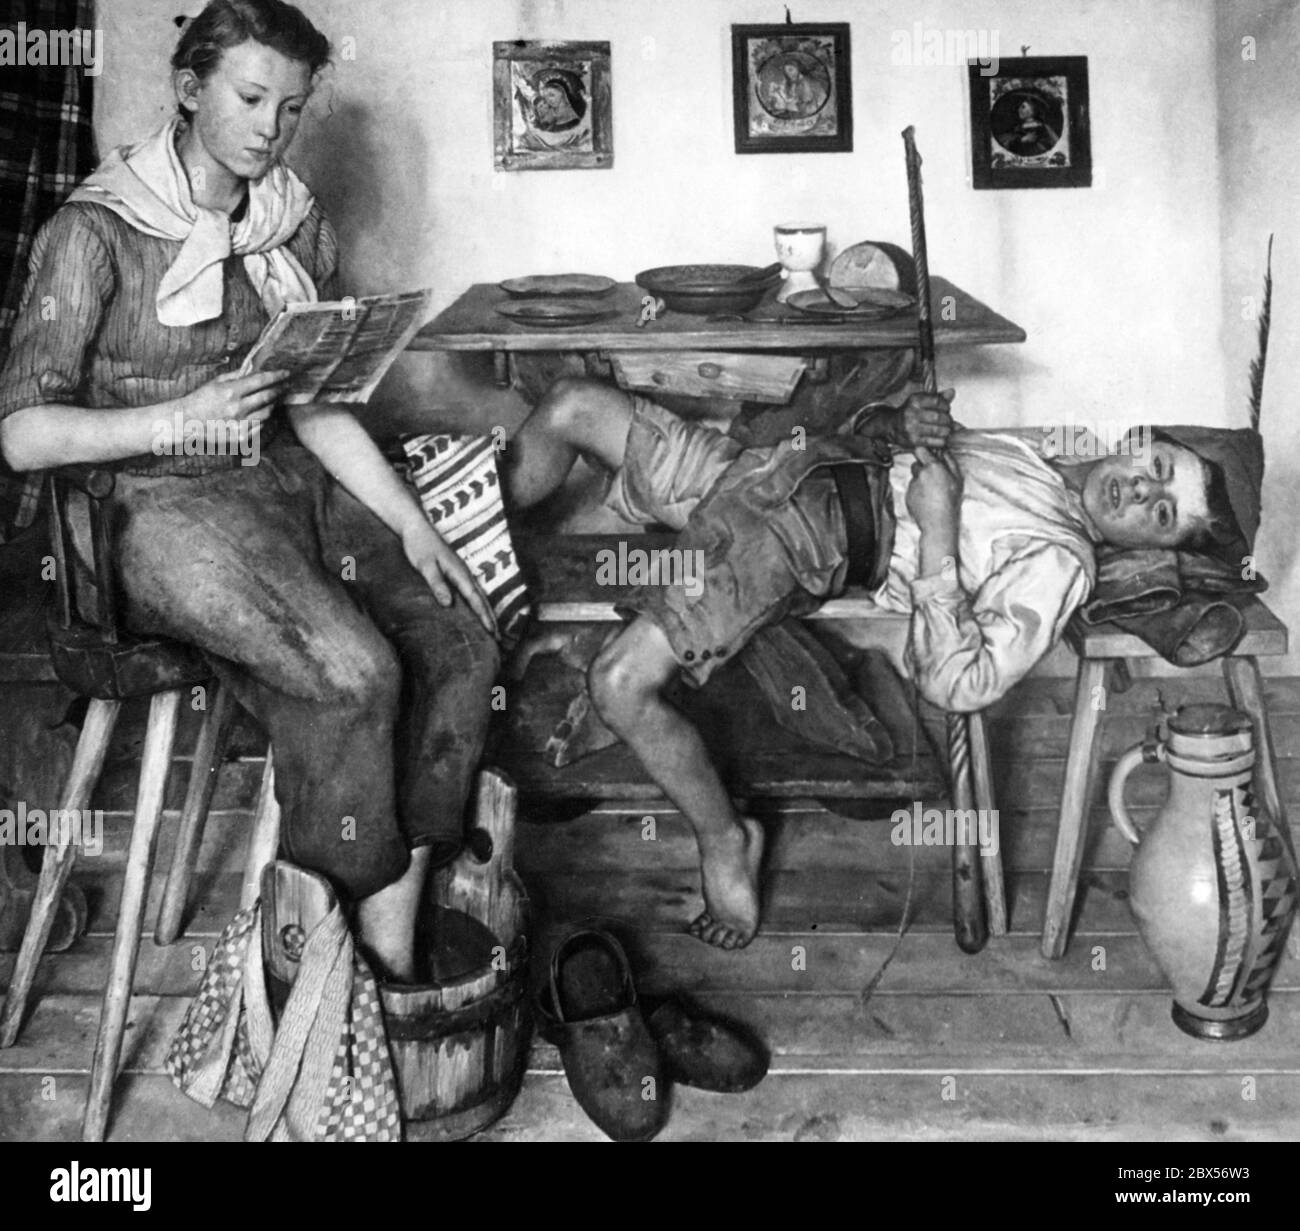 Ein Gemälde aus den auf der Biennale Venedig 1940 ausgestellten Werken. Es trägt den Titel "nach Feierabend" und ist das Werk von Sepp Hilz. Es zeigt einen Bauernjungen und ein junges Mädchen. Wahrscheinlich Geschwister. Sie sind im Esszimmer. Der Junge liegt auf der Bank, während das Mädchen beim Lesen einer Zeitung die Füße wäscht. Auf dem Tisch gibt es eine leichte Mahlzeit. Stockfoto